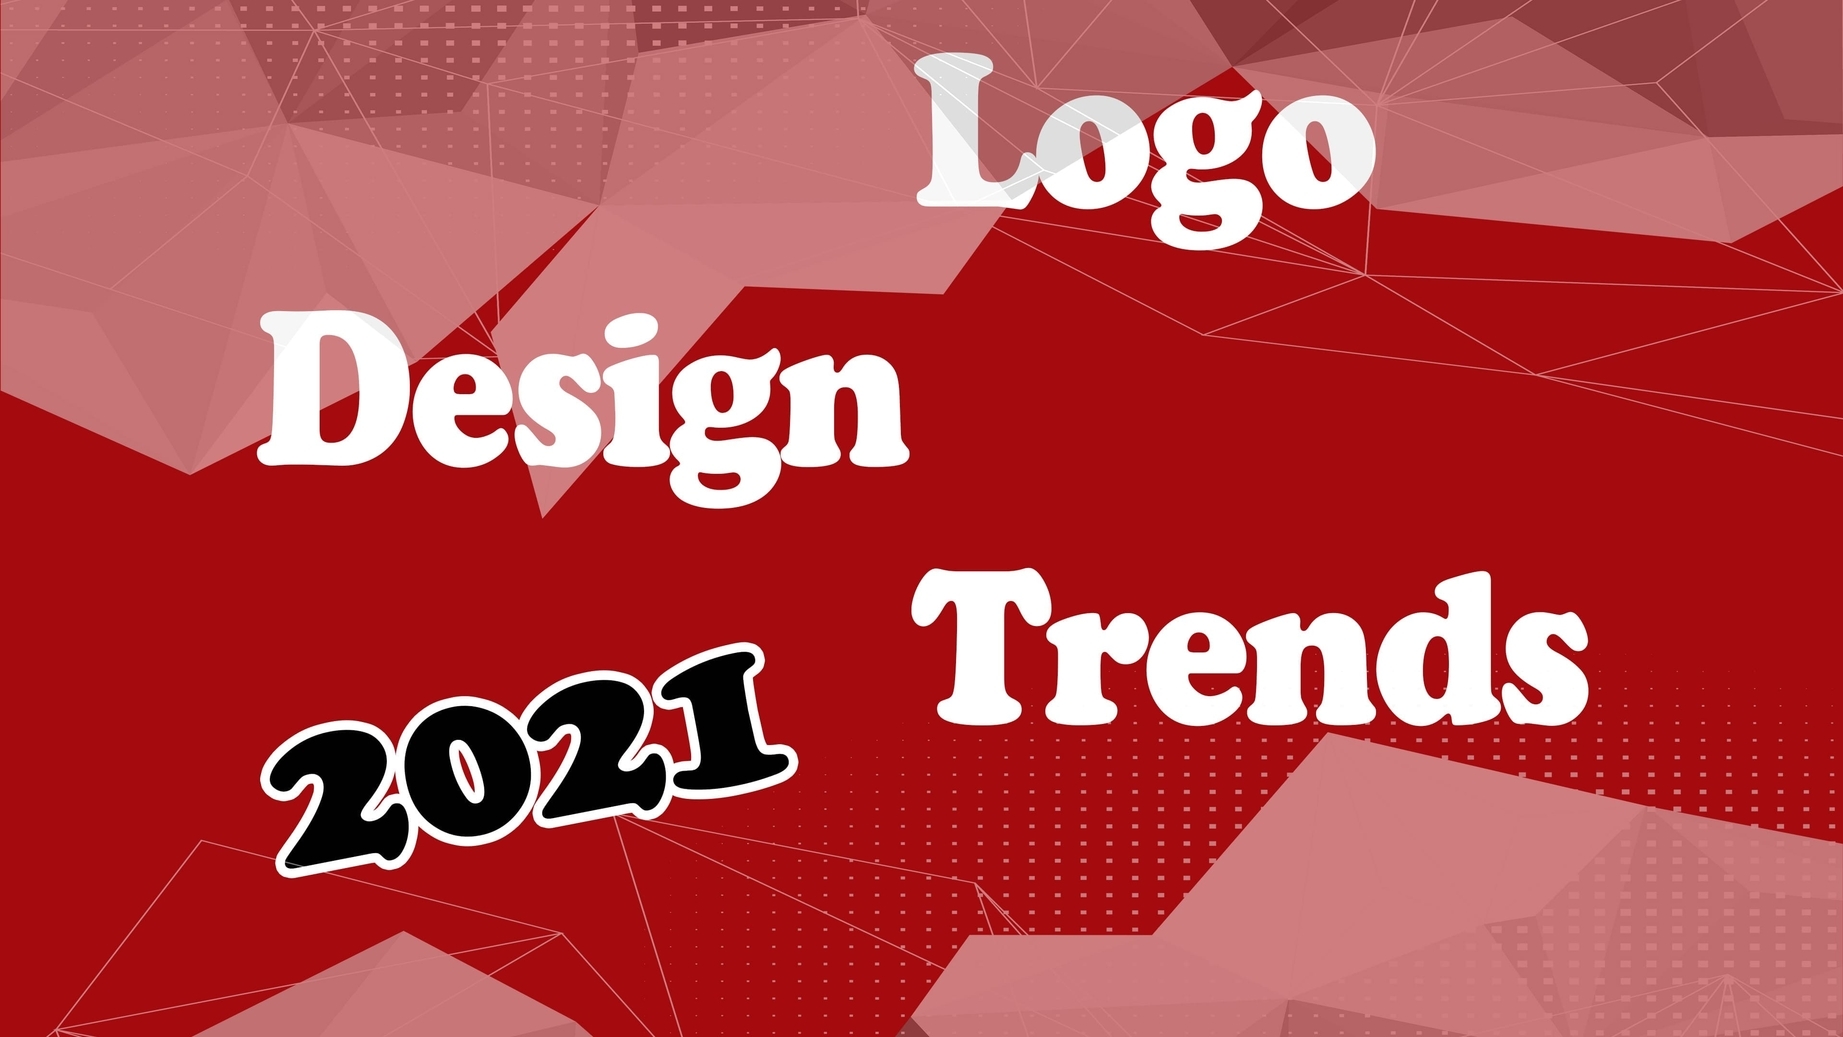 Best sign design trends for 2021